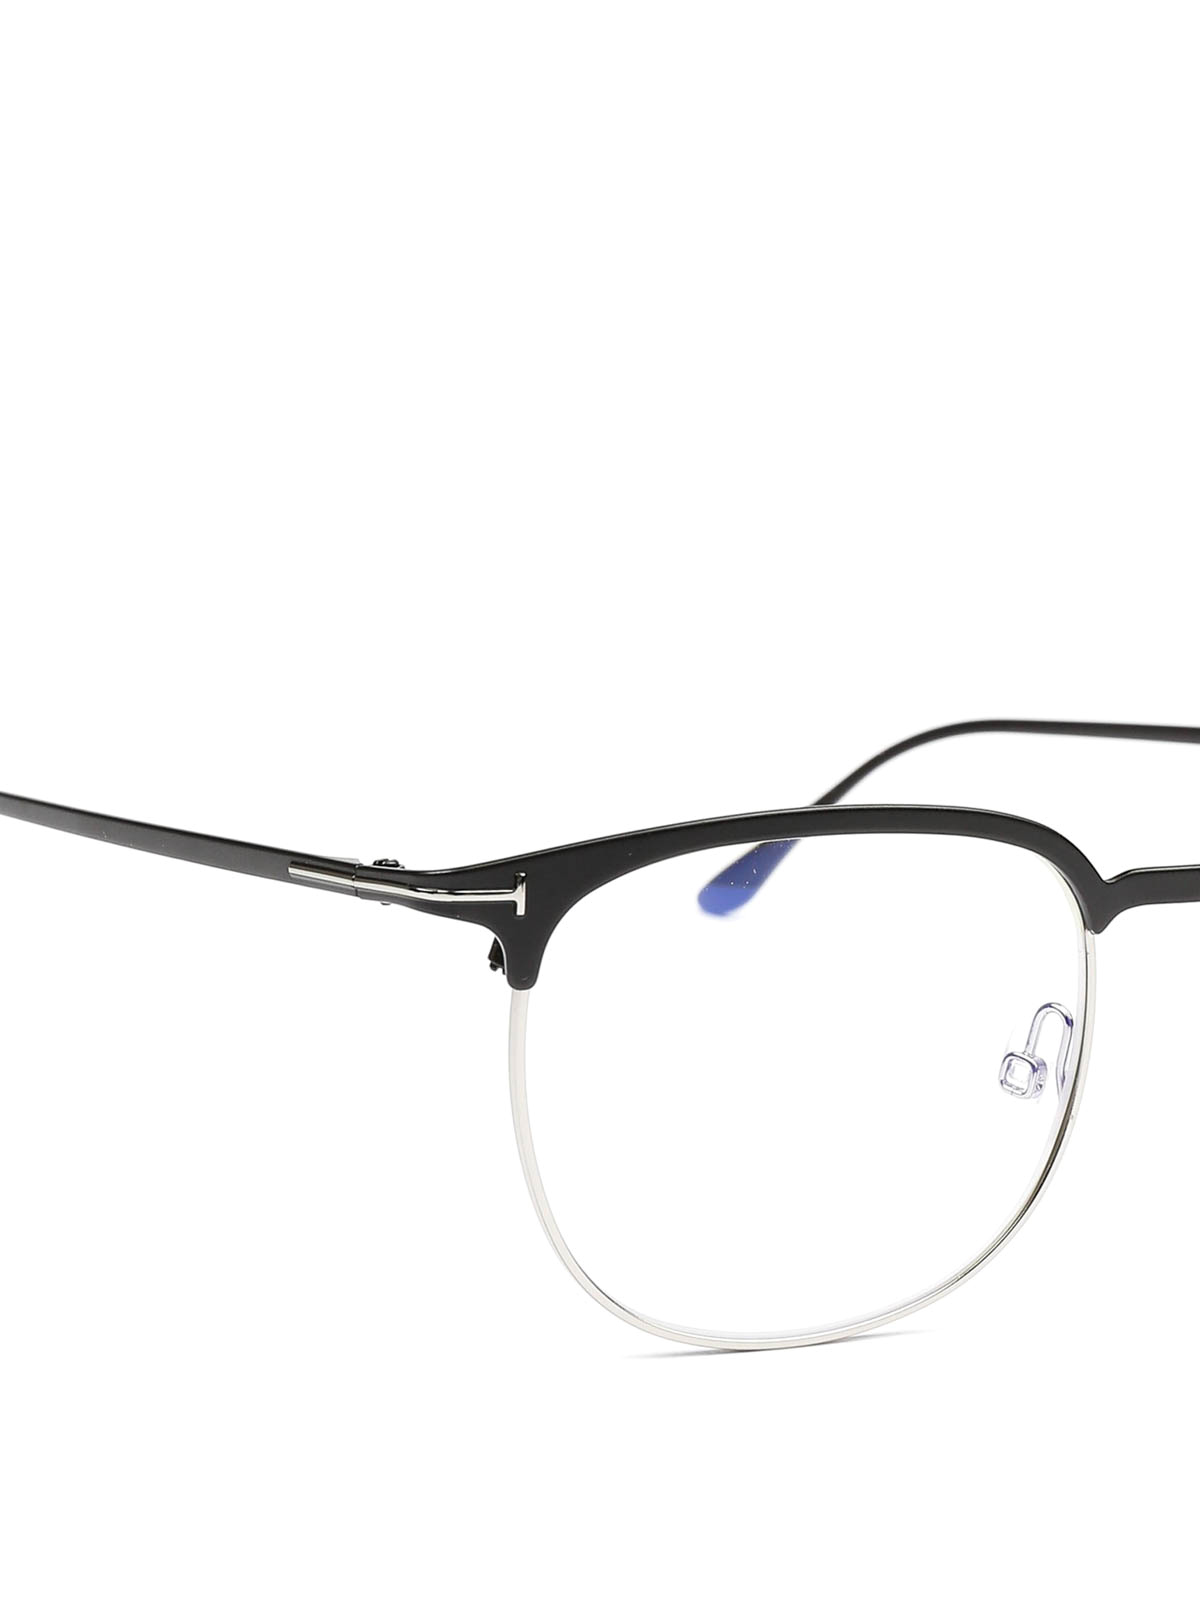 Glasses Tom Ford - Acetate half frame eyeglasses - FT5549B005 